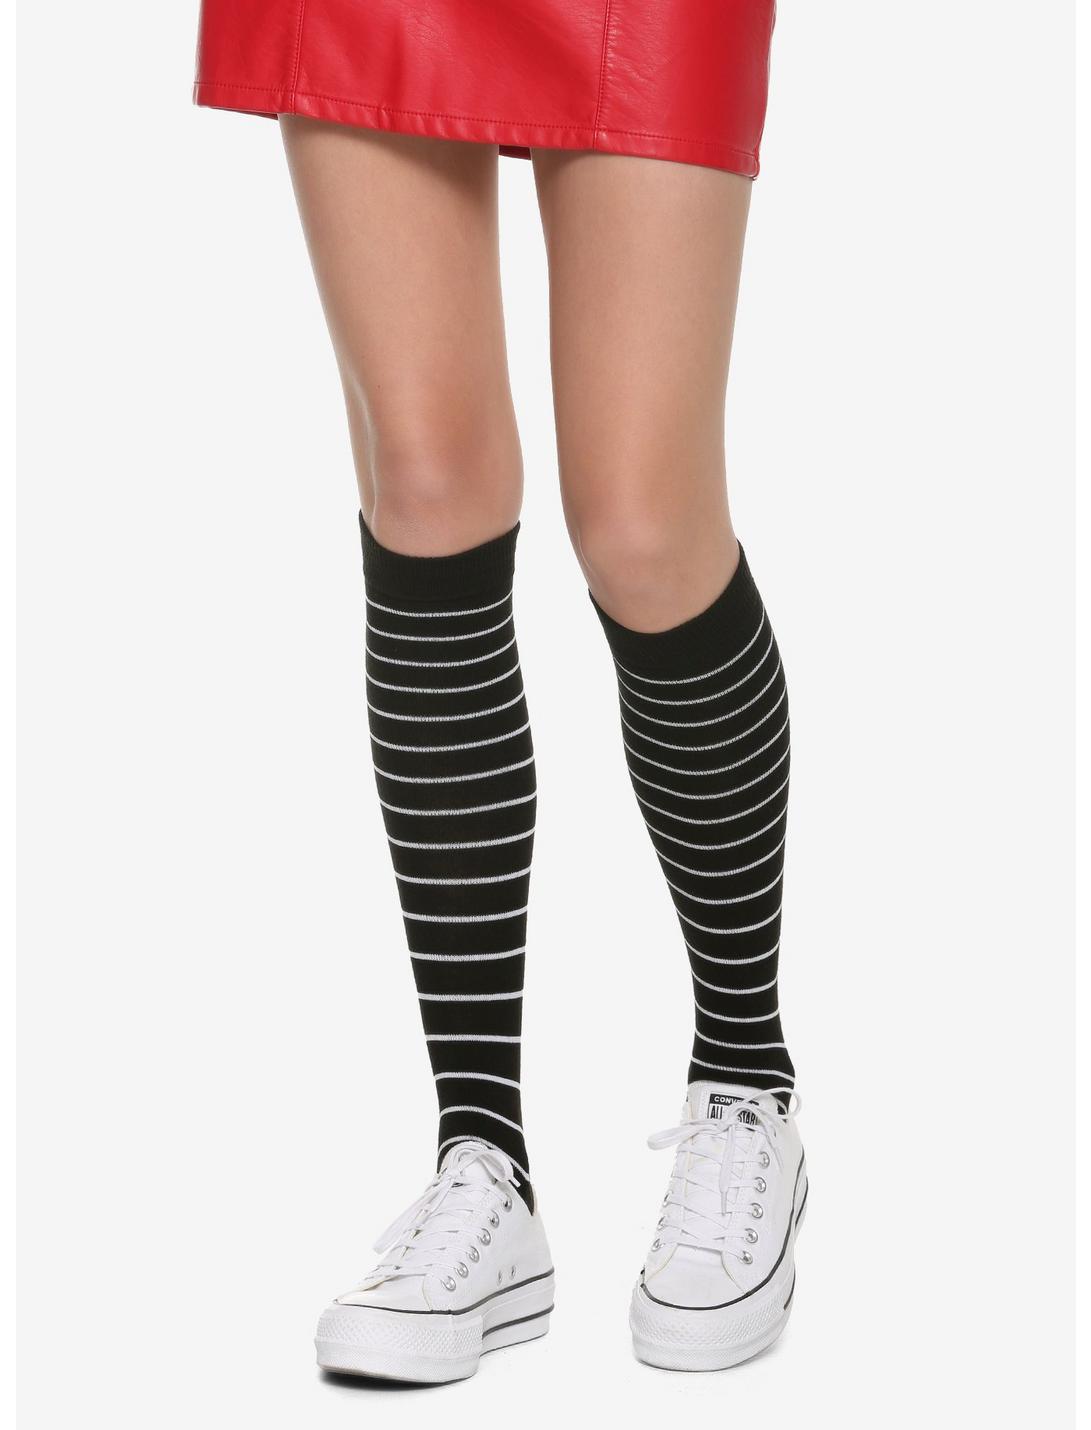 Black & White Striped Knee-High Socks, , hi-res